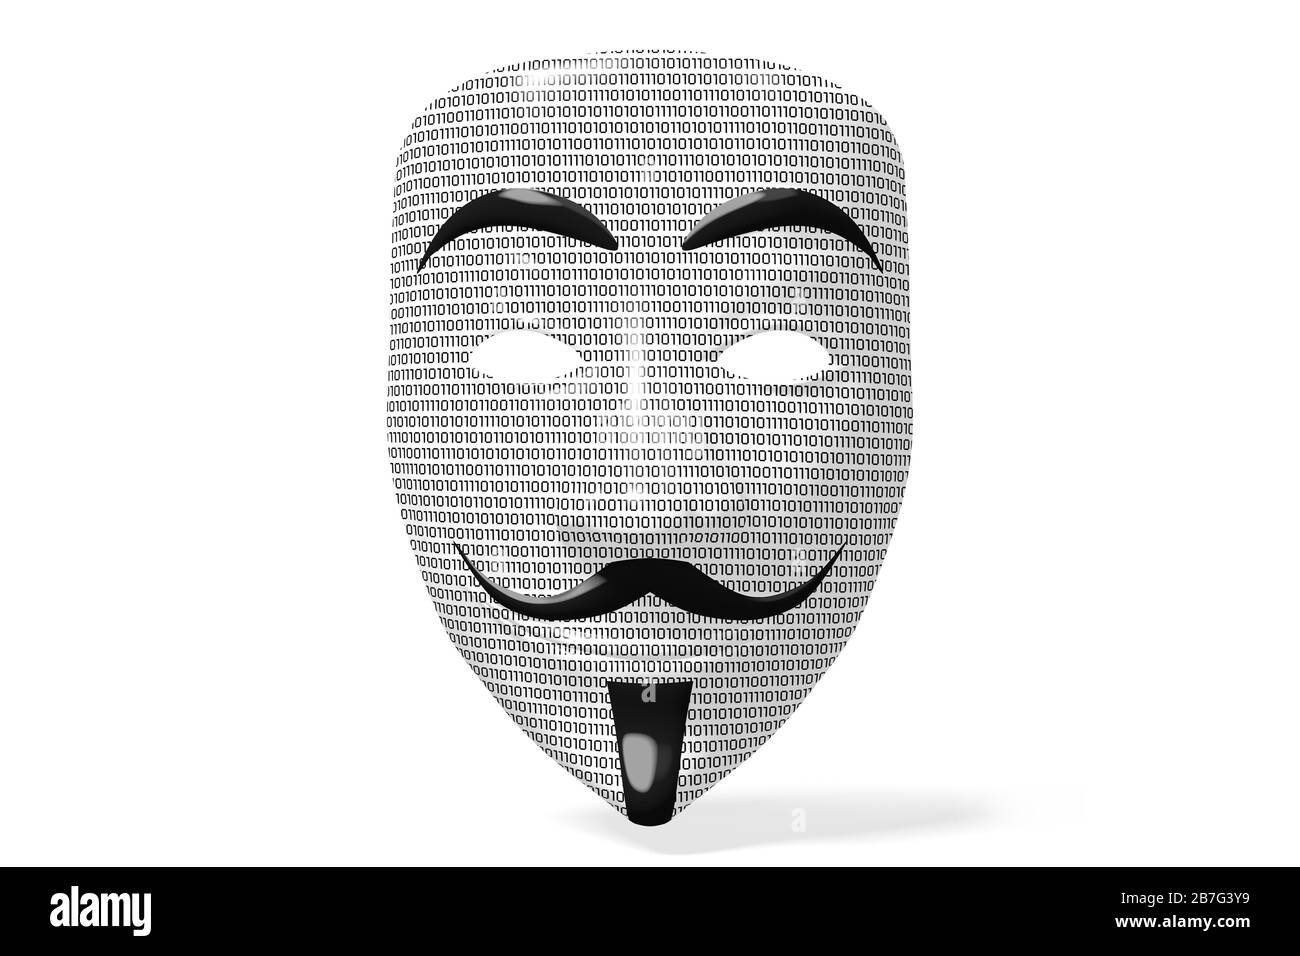 Anonyme Maske mit Binärcode - isoliert auf weißem Hintergrund Stockfoto